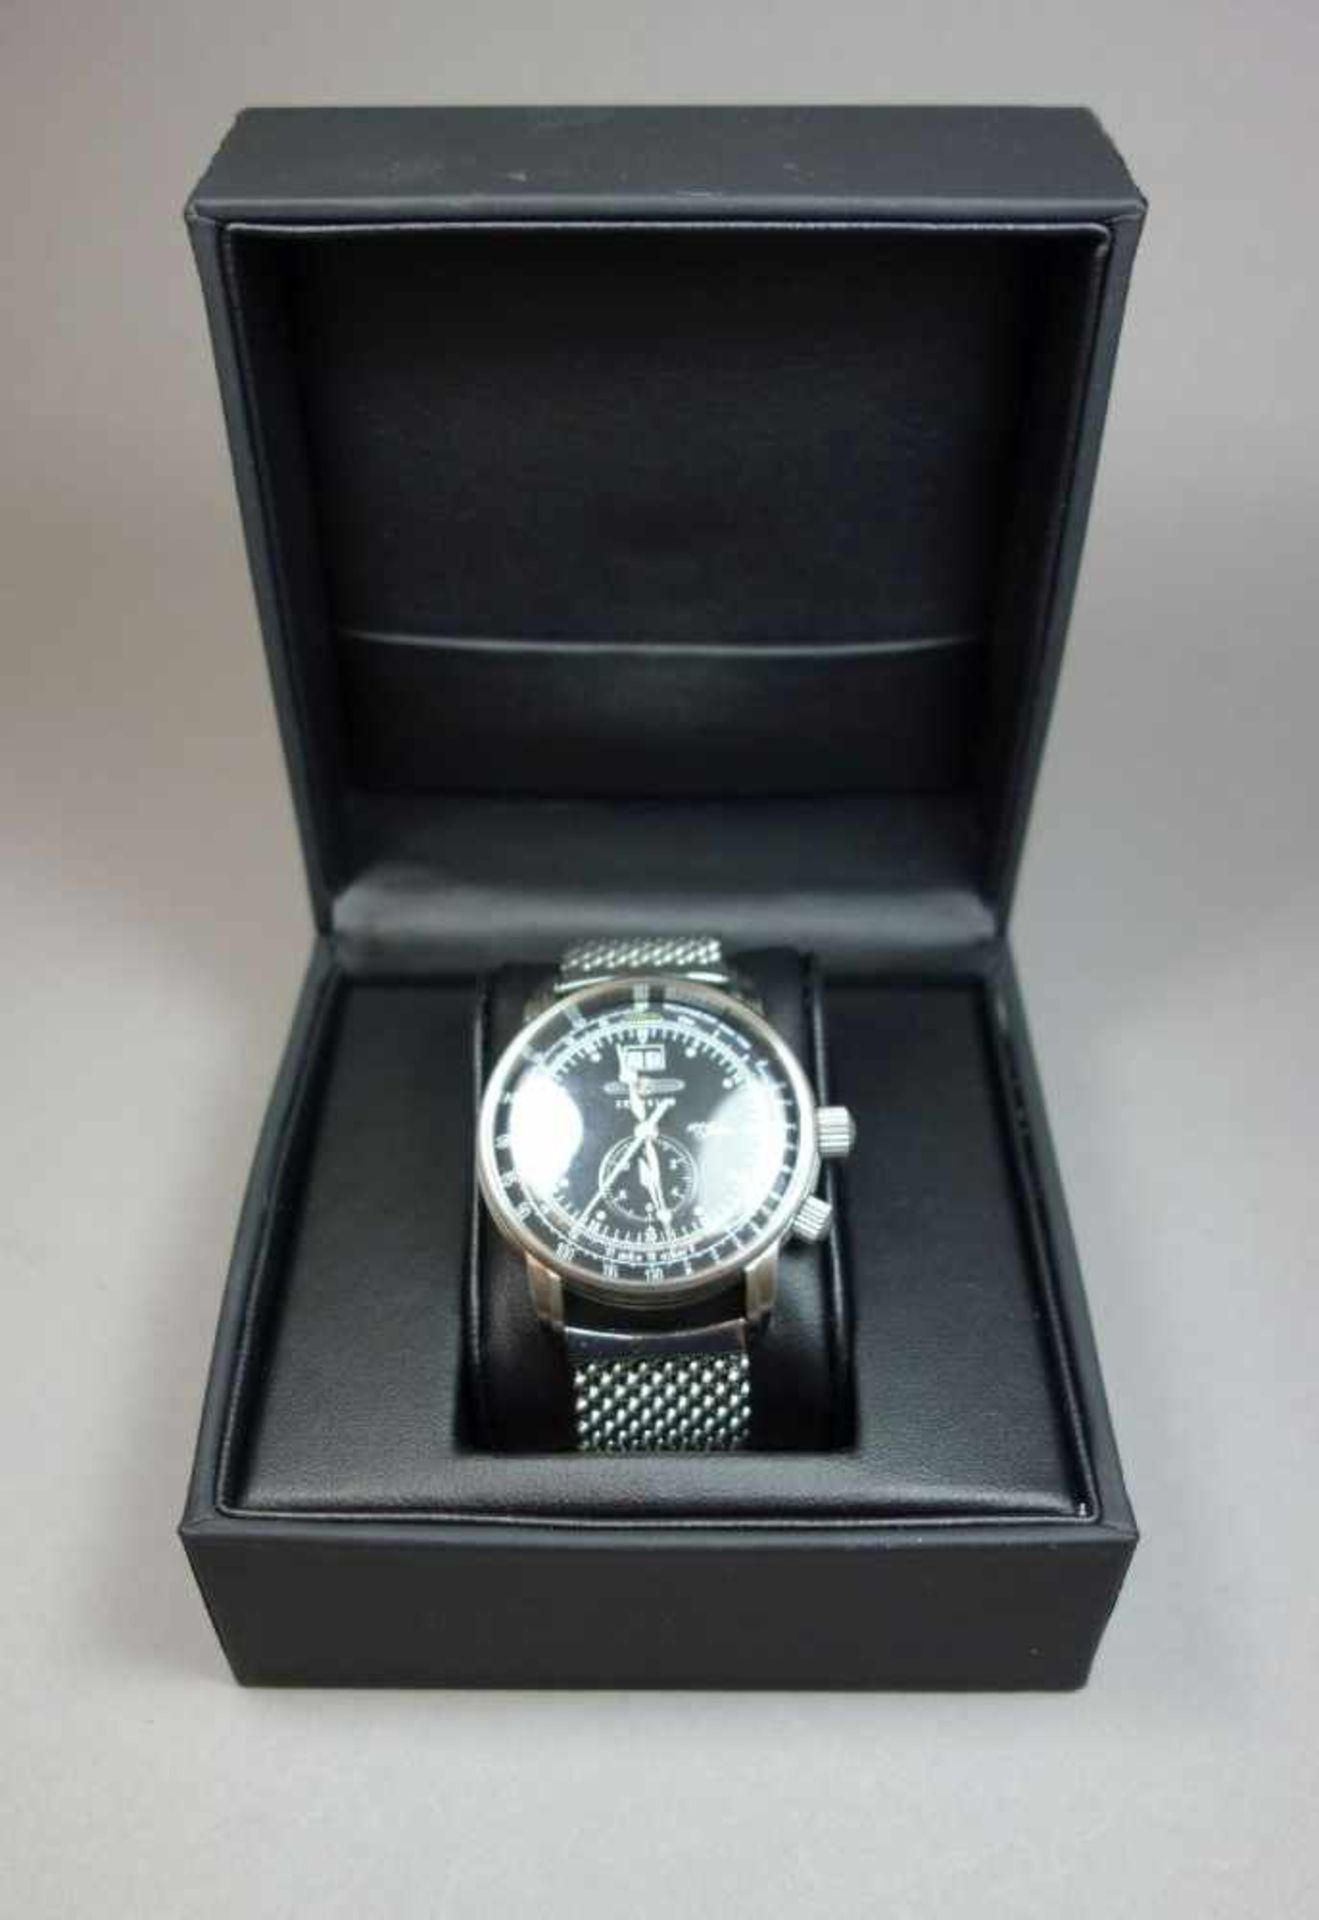 ARMBANDUHR ZEPPELIN 7640M-1 / wristwatch, Quartz-Uhr, Manufaktur Point tec Electronic GmbH / - Image 5 of 7